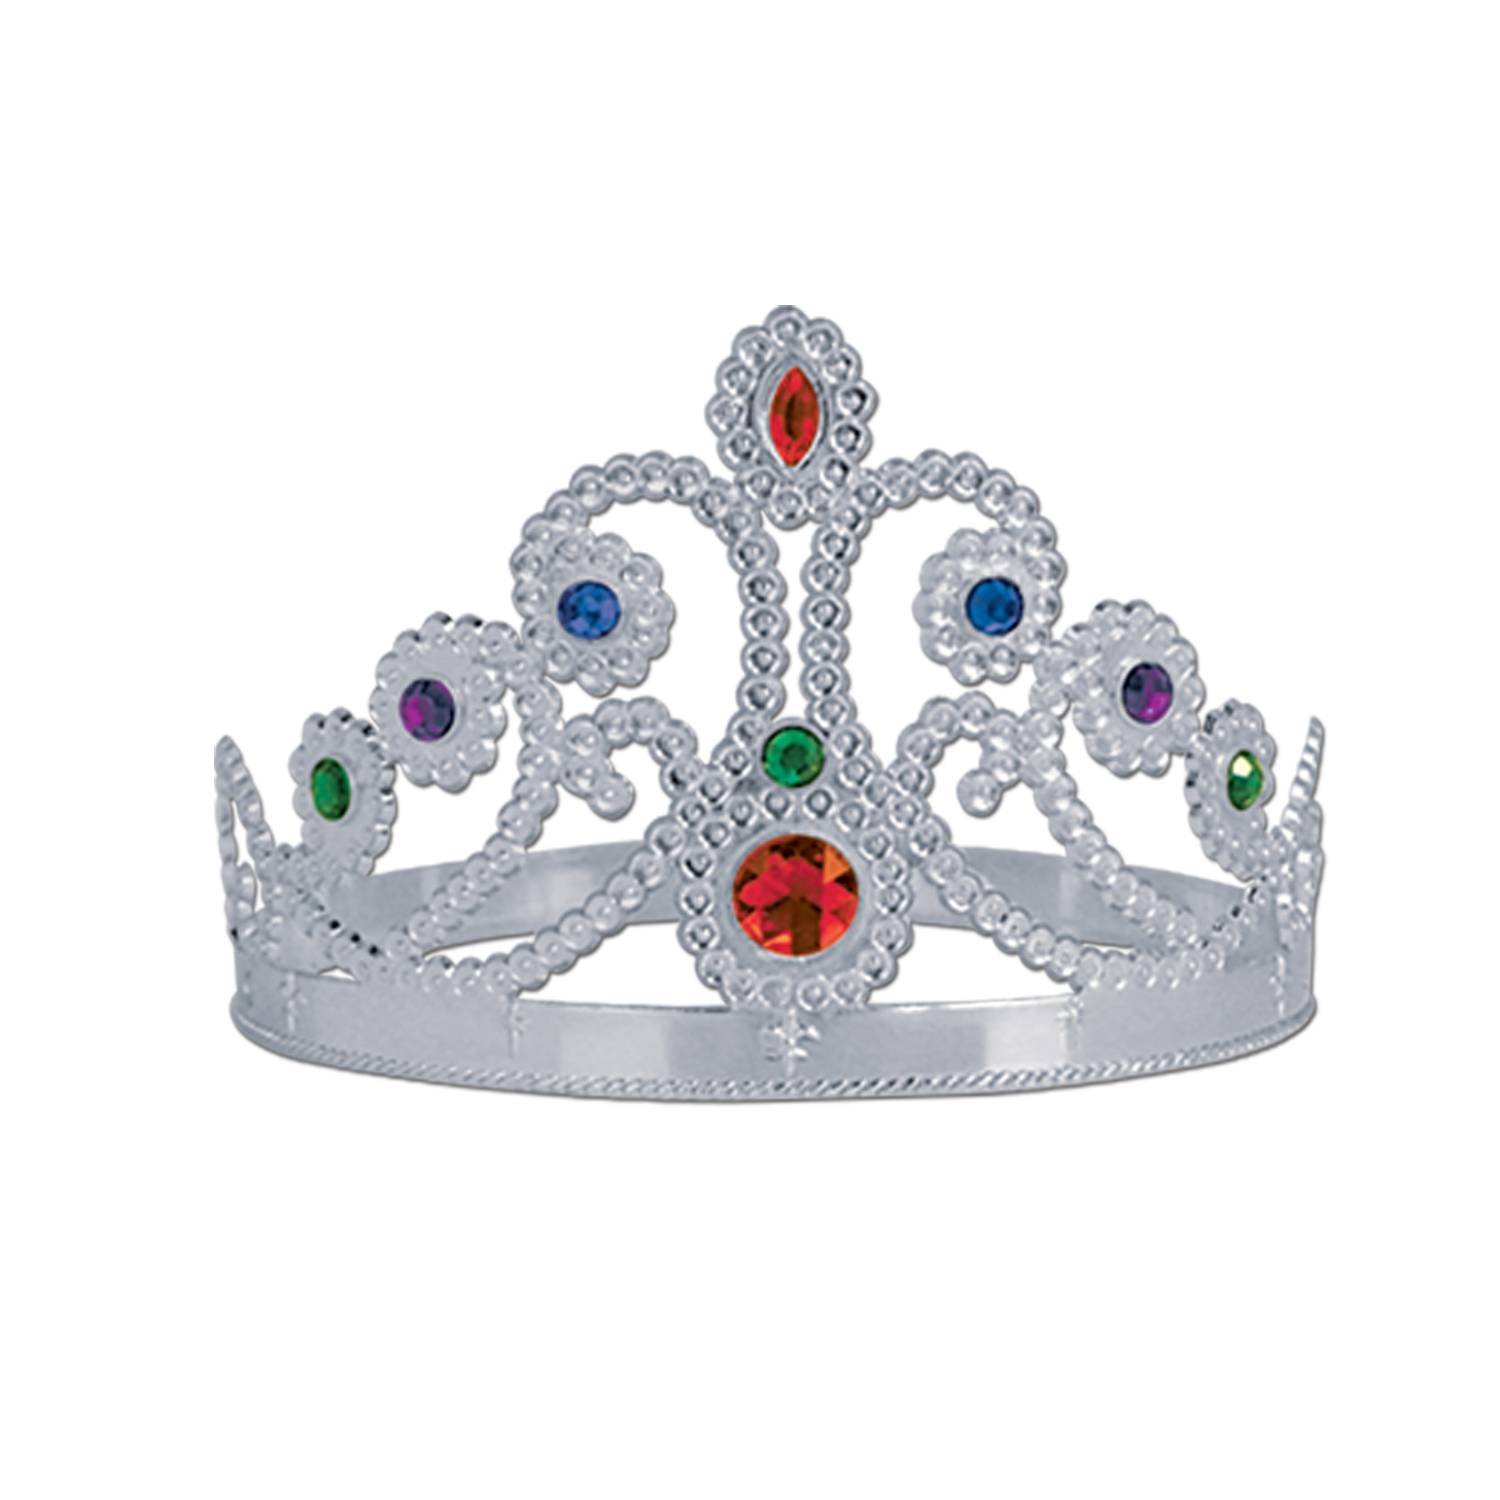 Plastic Jeweled Queen's TIARA